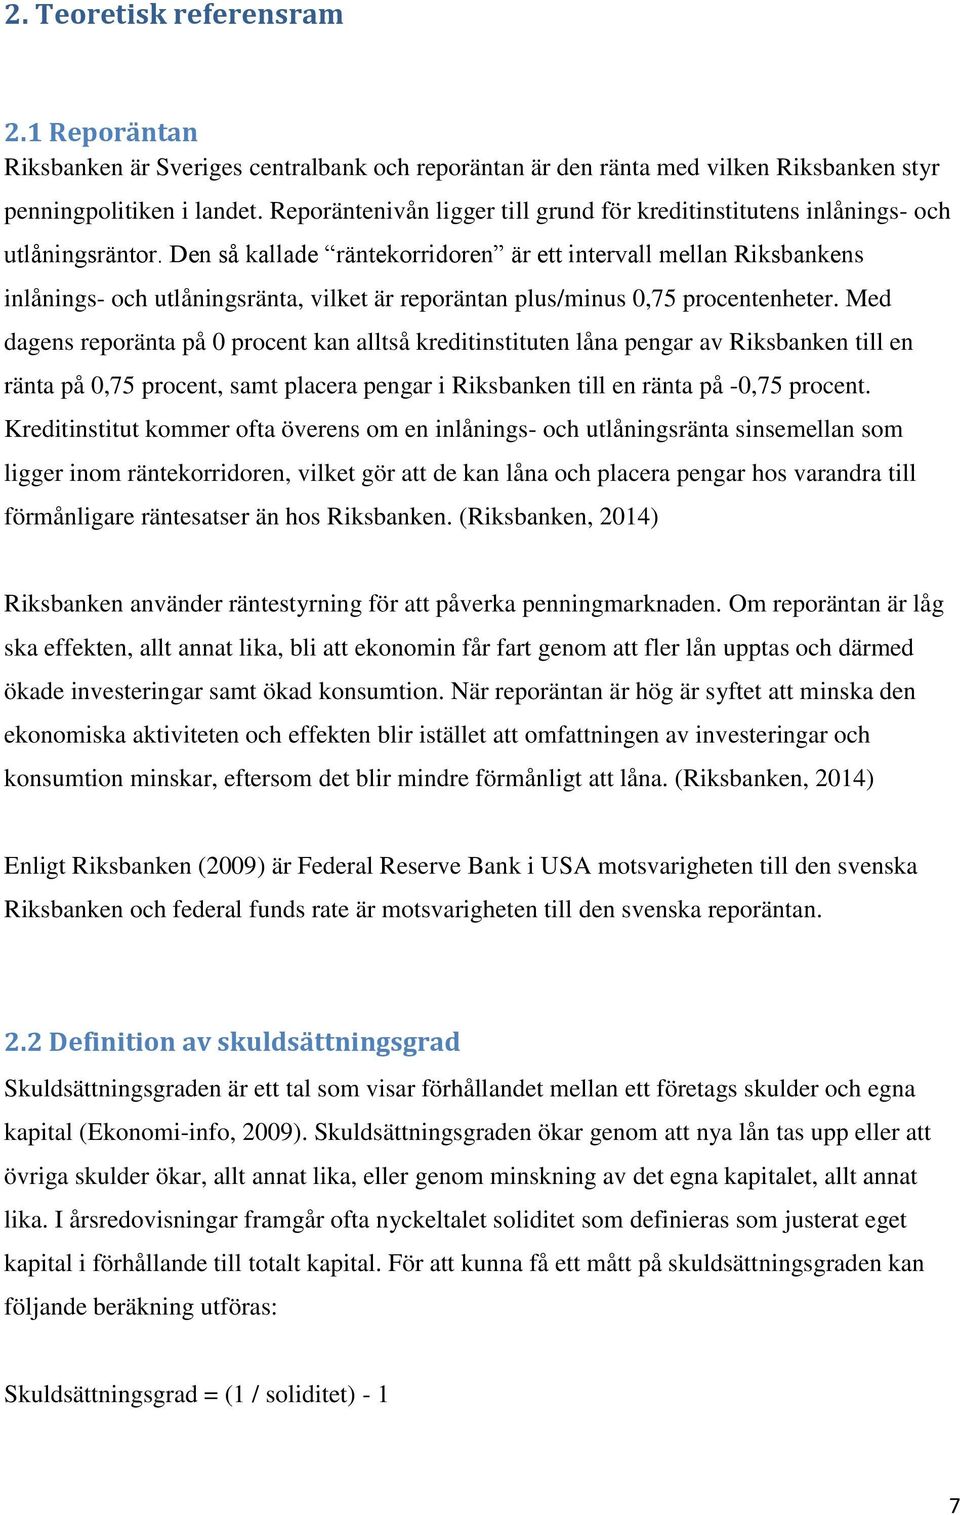 Den så kallade räntekorridoren är ett intervall mellan Riksbankens inlånings- och utlåningsränta, vilket är reporäntan plus/minus 0,75 procentenheter.